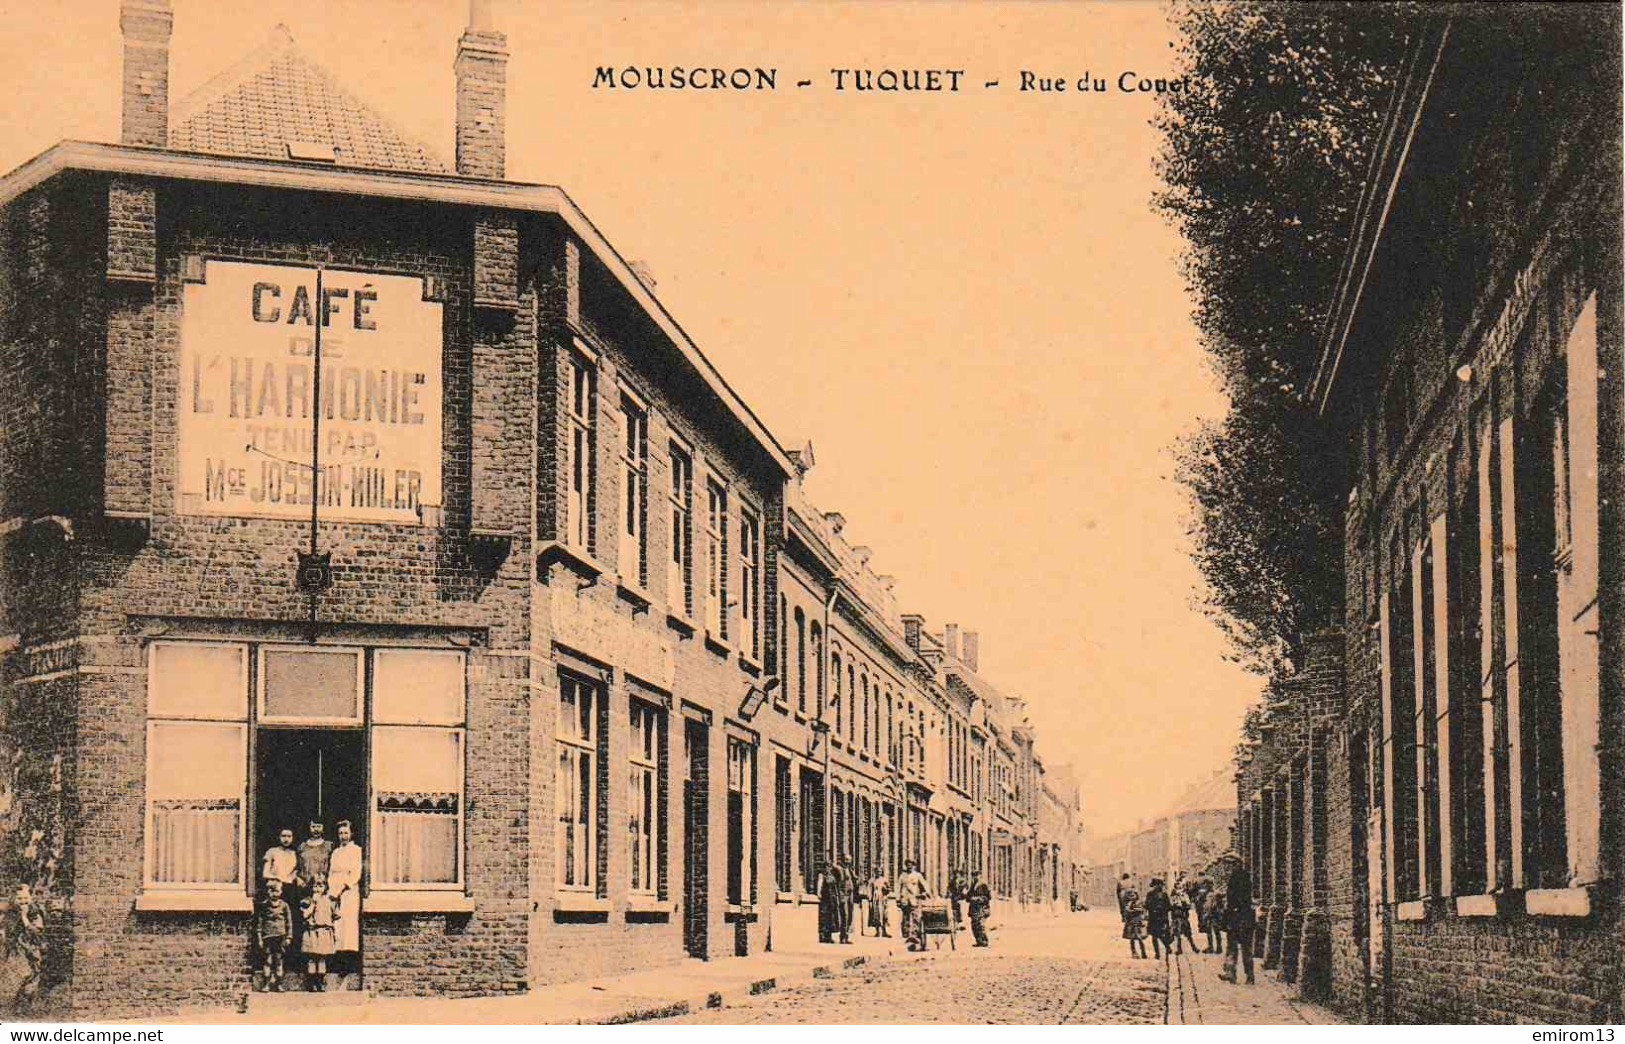 Mouscron Tuquet Rue Du Couet Café De L’Harmonie - Mouscron - Möskrön